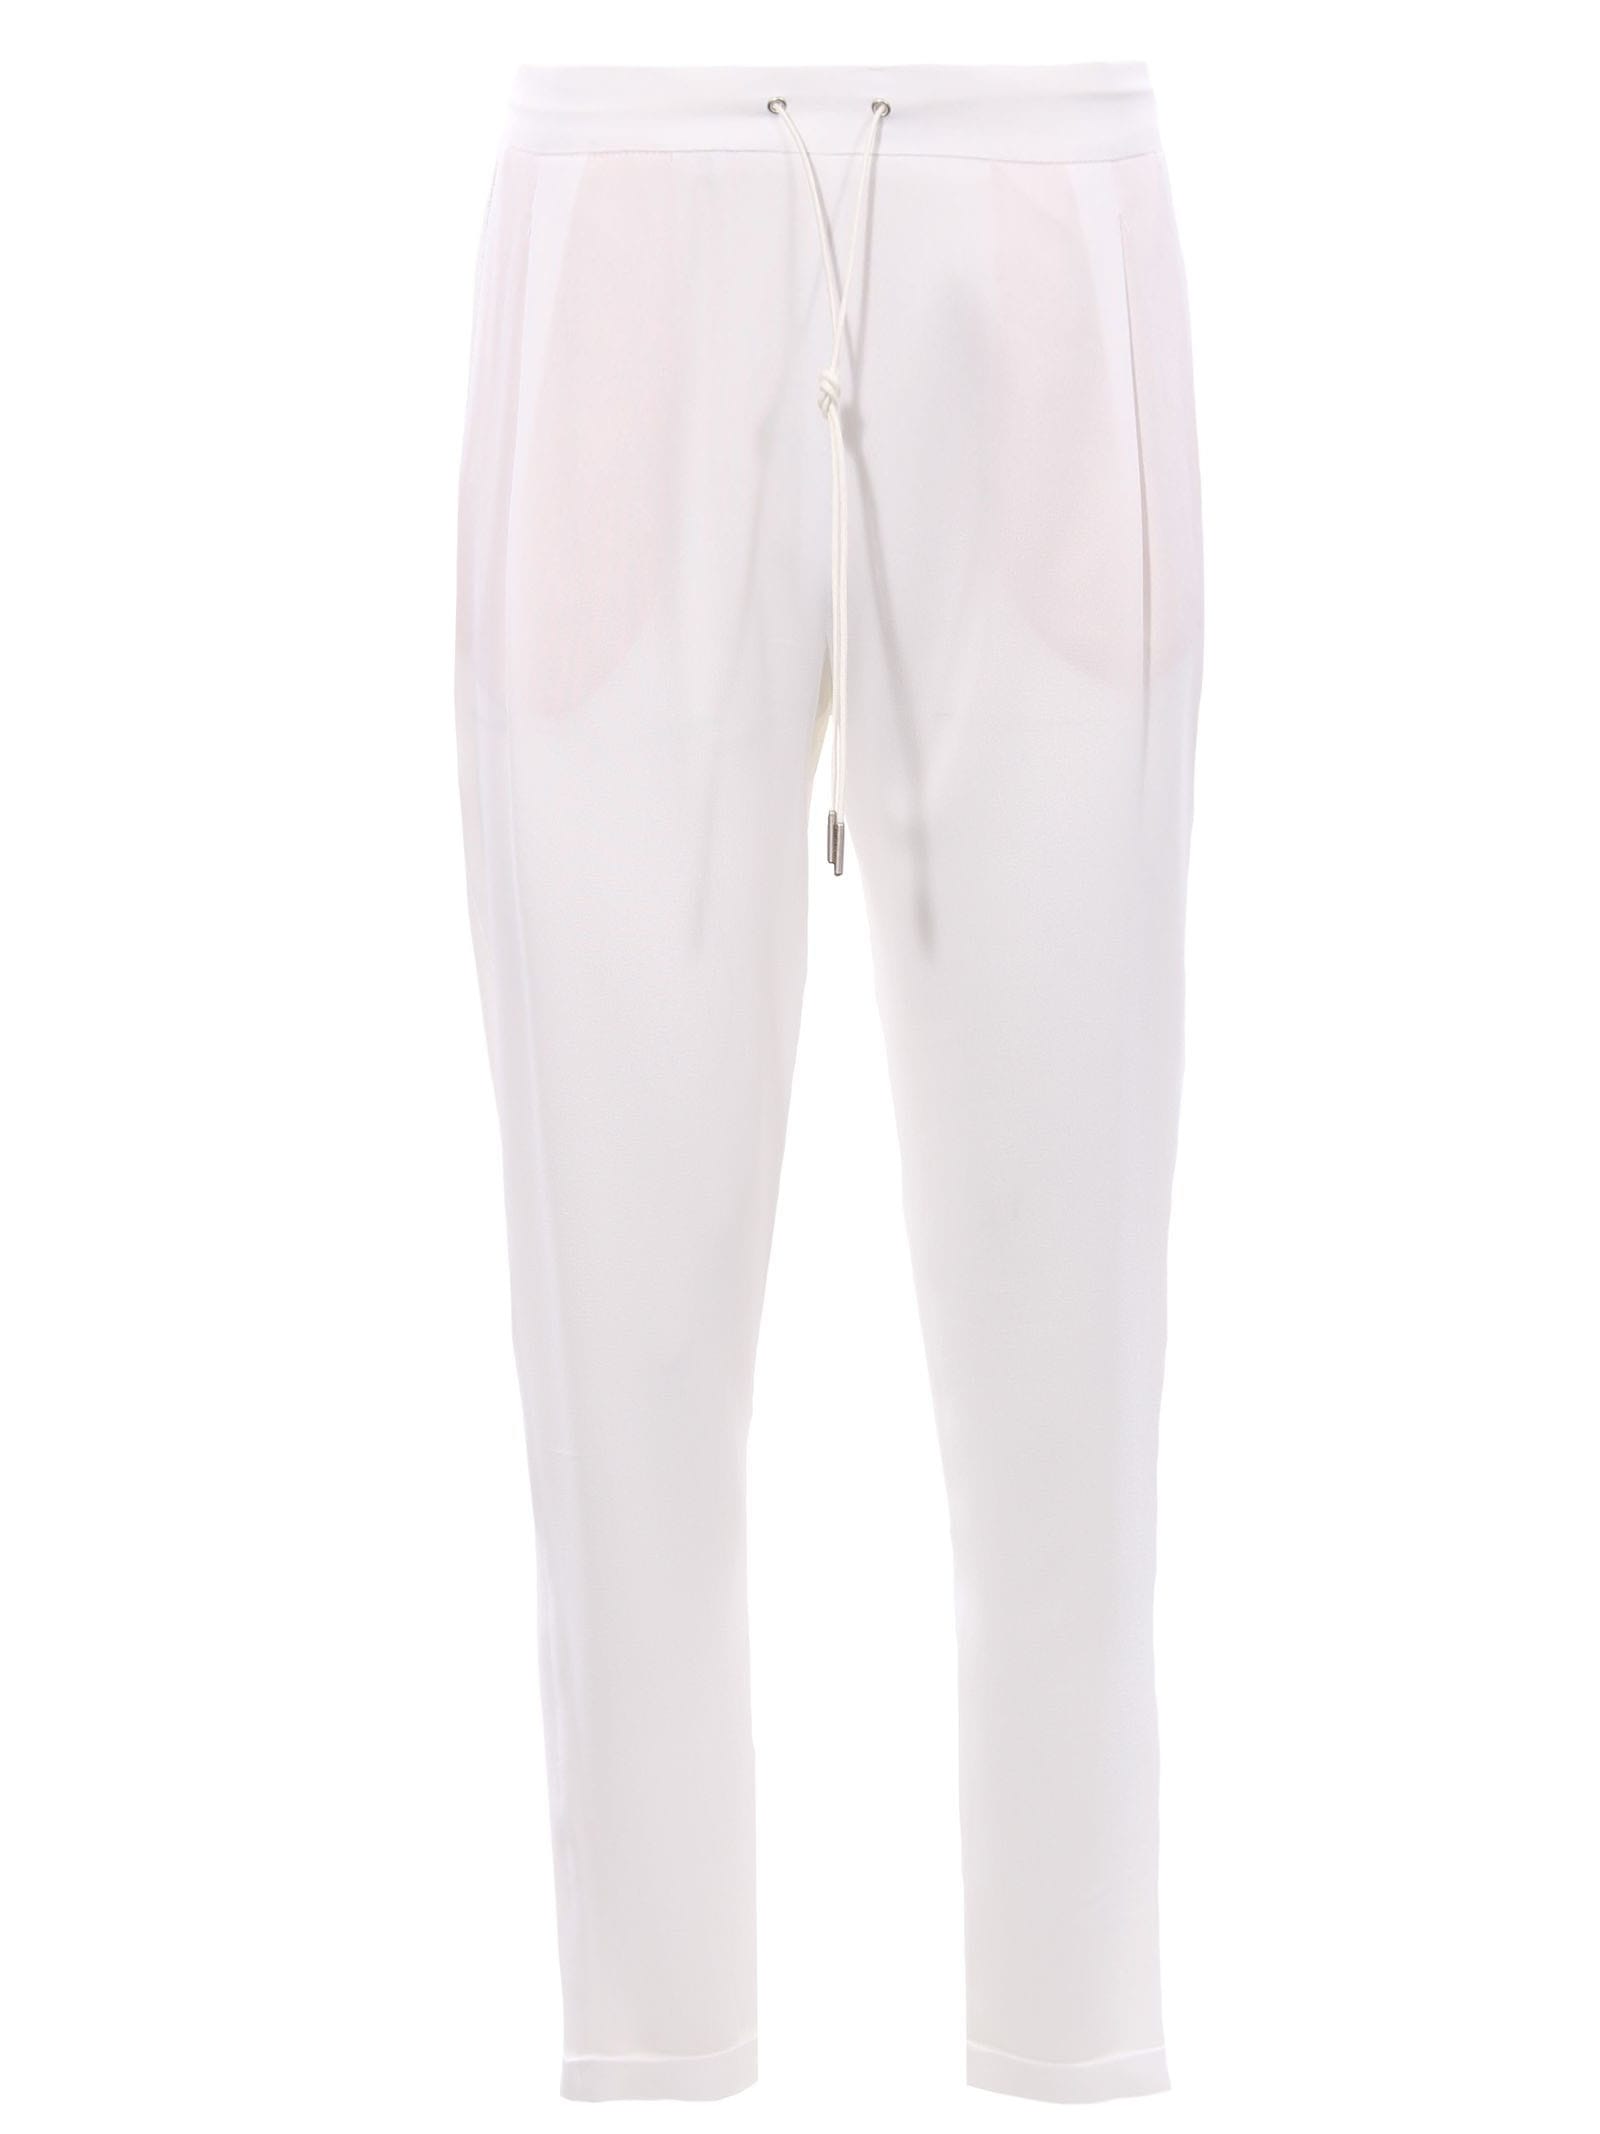 Fabiana Filippi White Silk Trousers